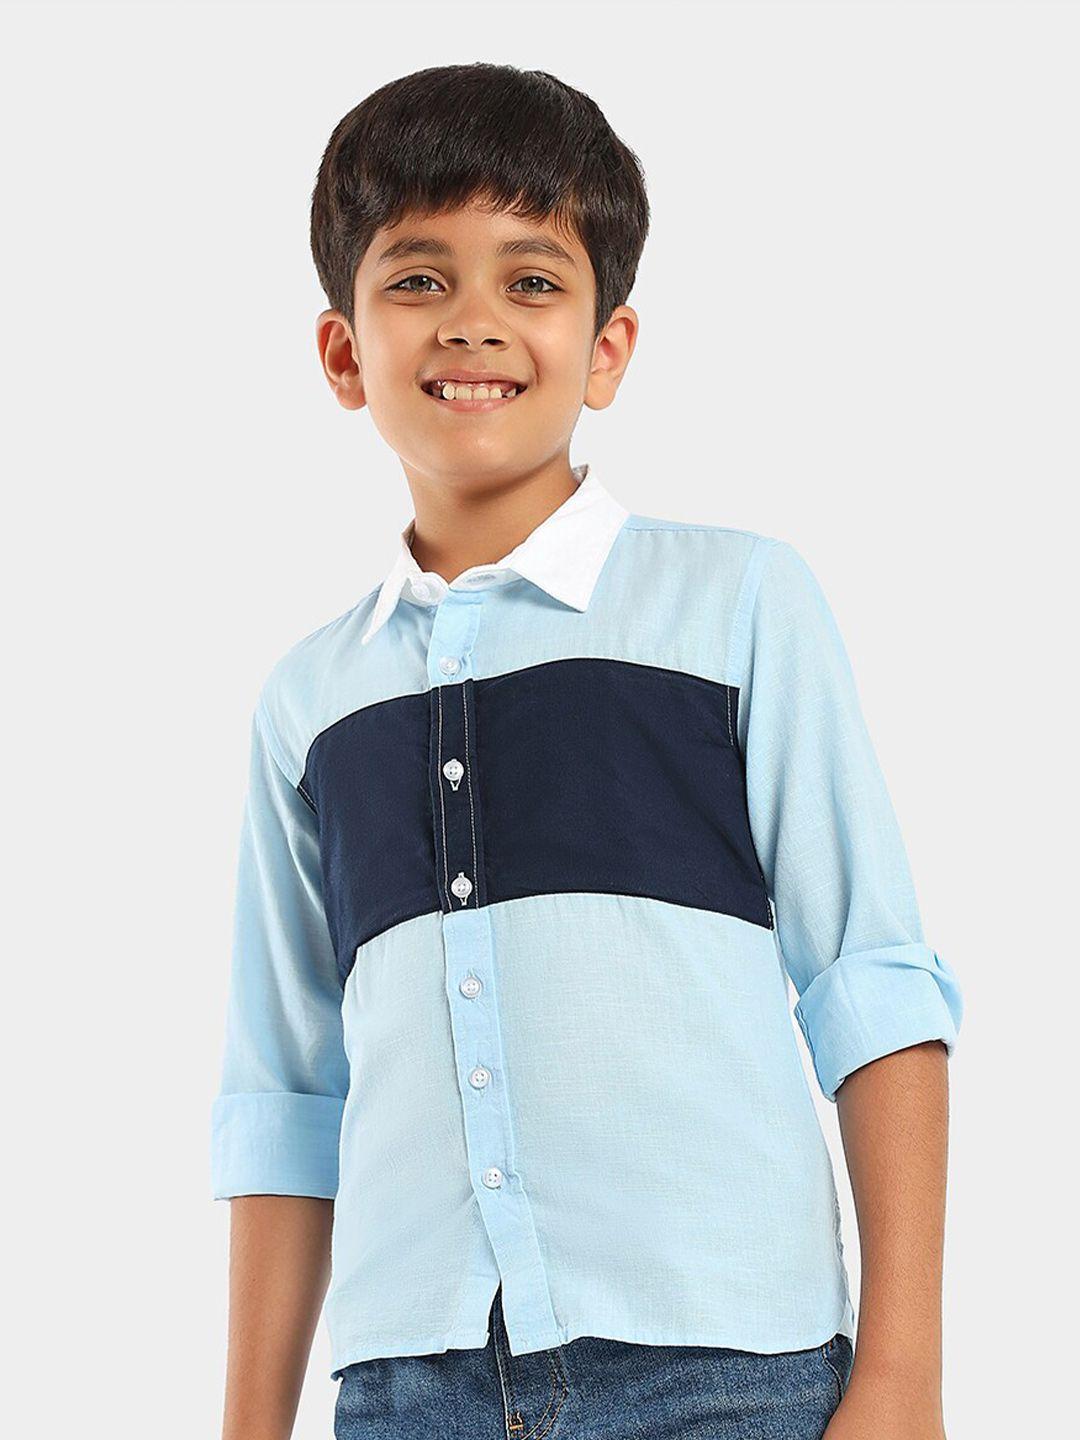 lilpicks-boys-navy-blue-smart-opaque-casual-shirt